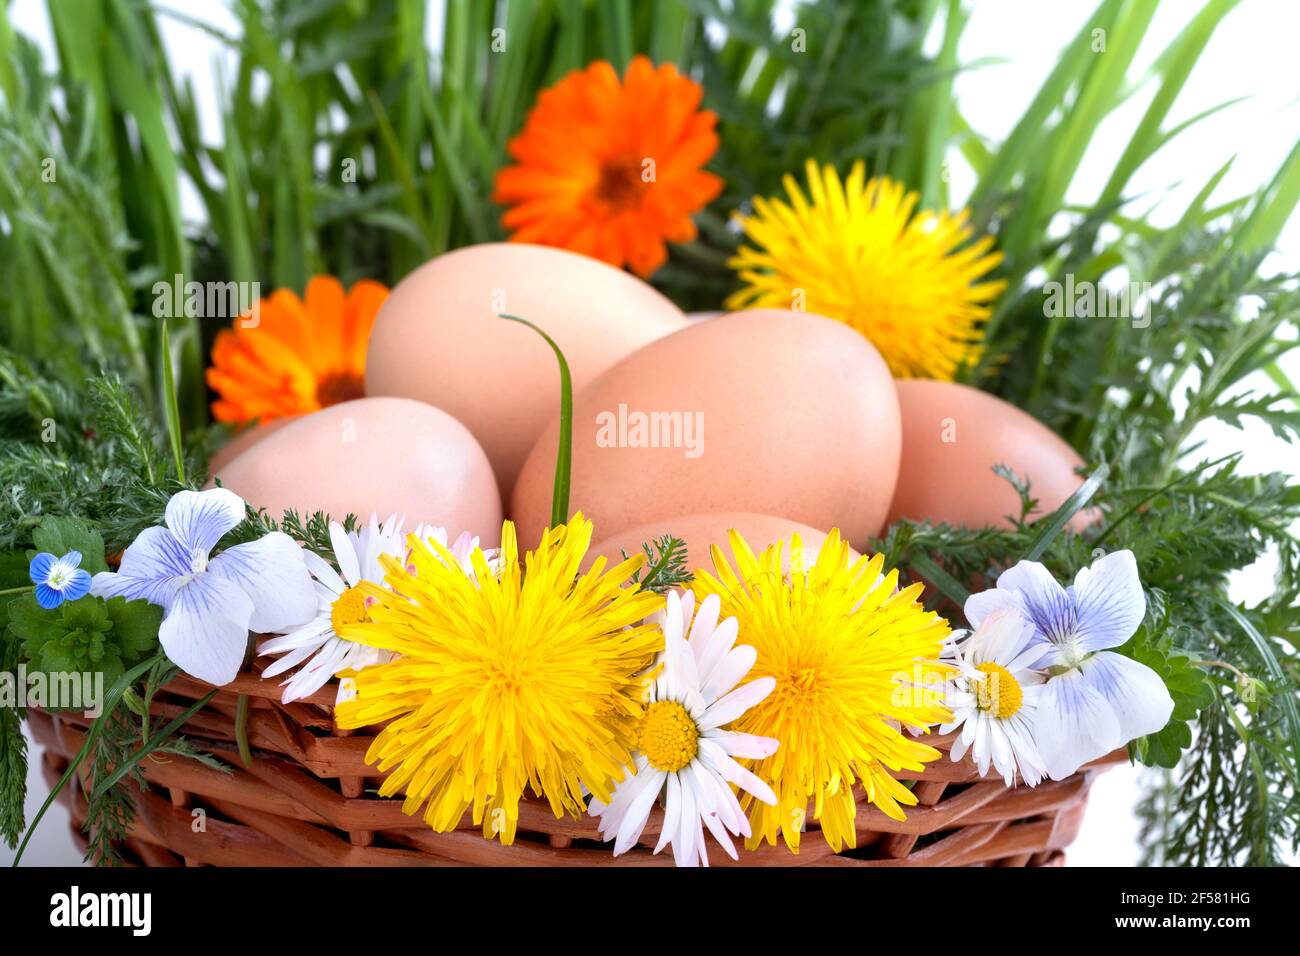 Eier in einem Korb mit Frühlingspflanzen und Blumen Stockfoto